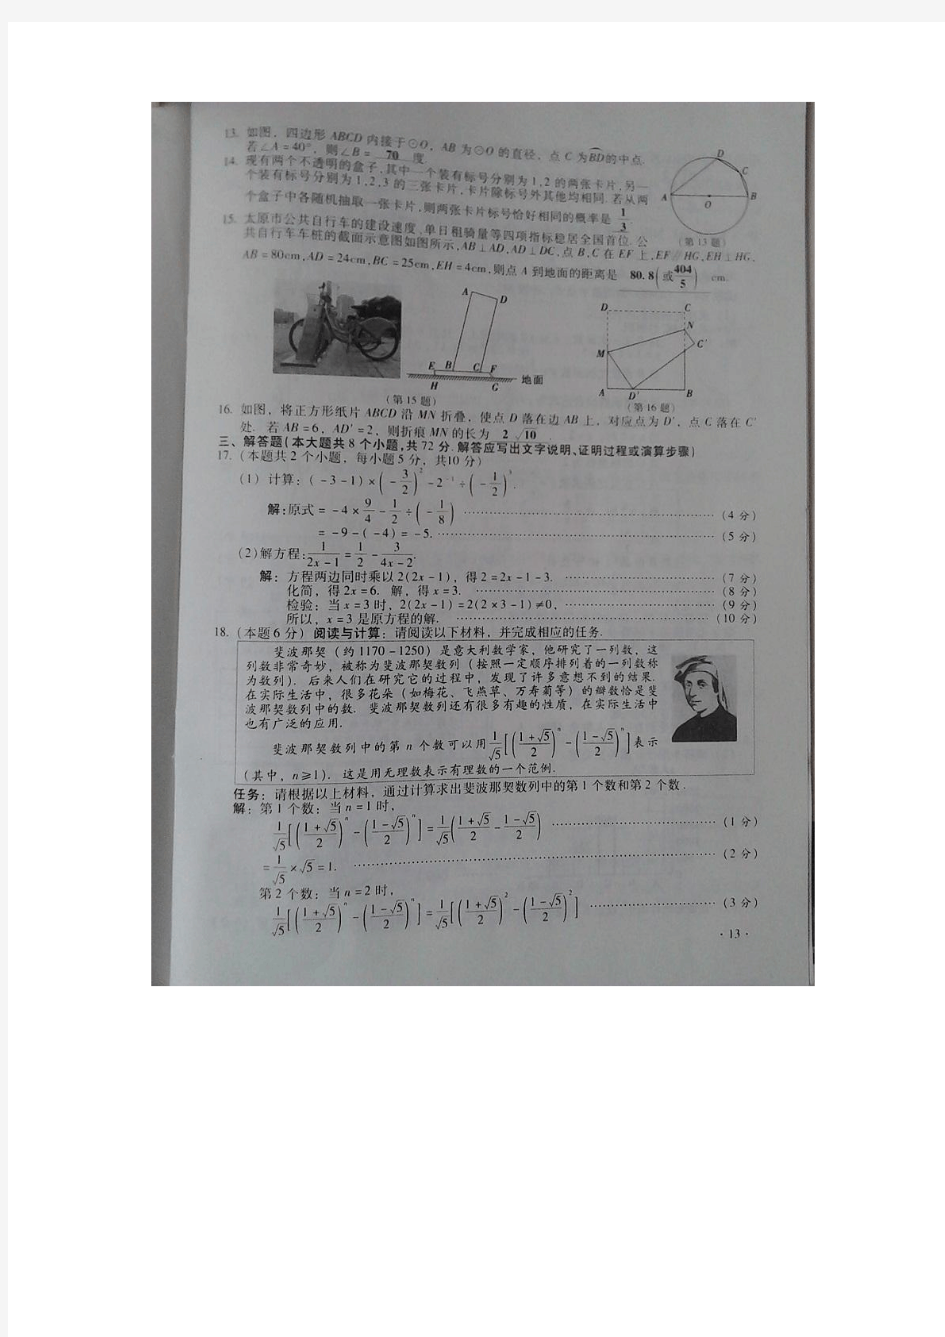 2015年山西省中考(高中阶段教育学校招生统一考试)数学试题与答案(图片版)